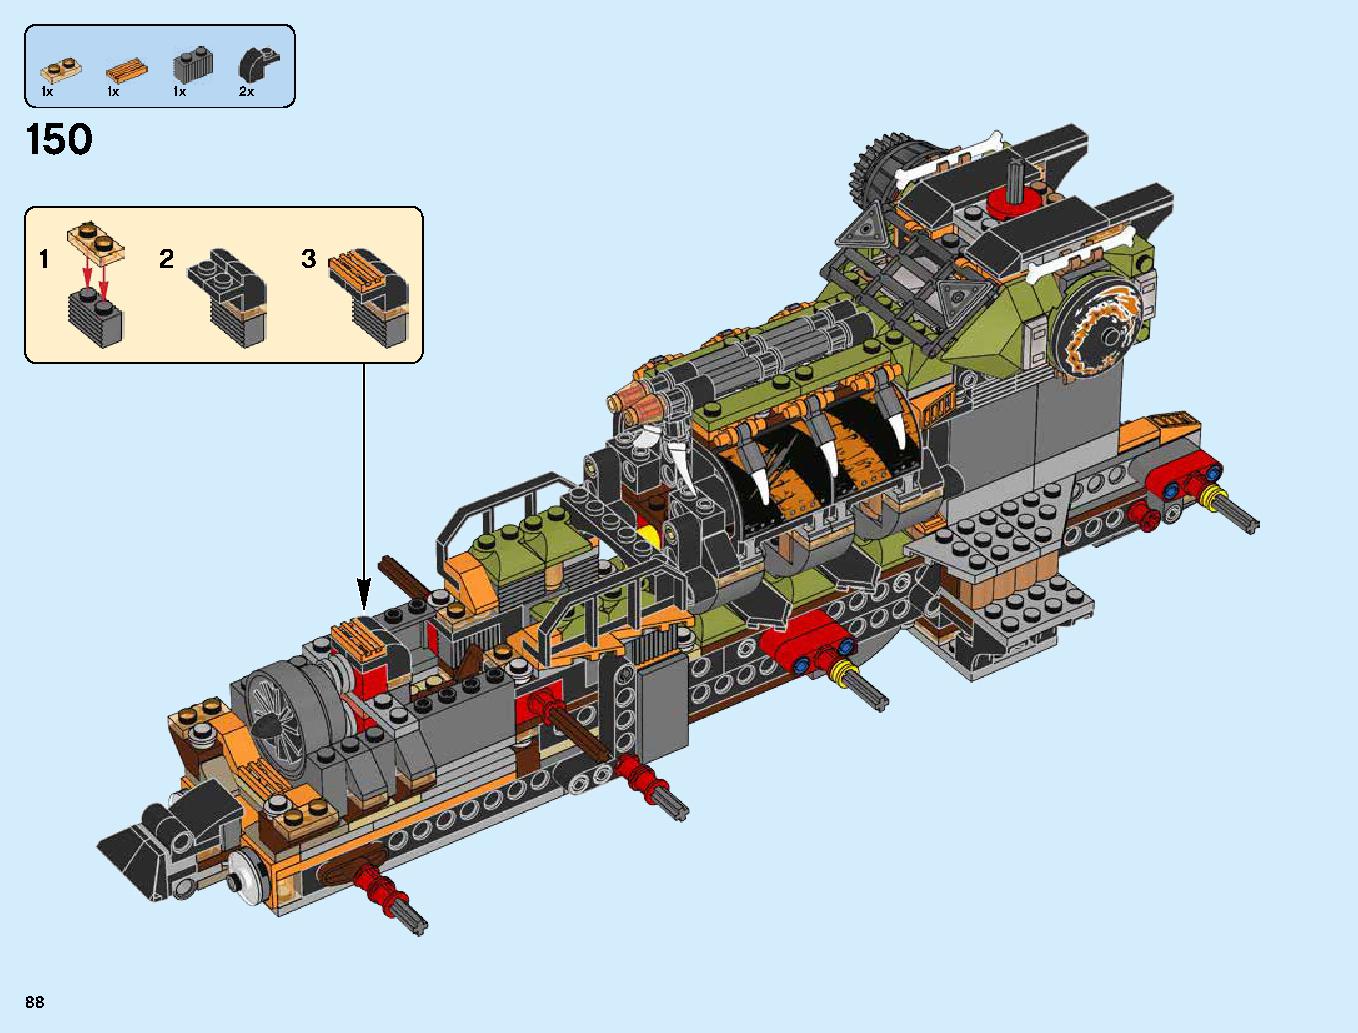 ハンティング・デスストライカー 70654 レゴの商品情報 レゴの説明書・組立方法 88 page